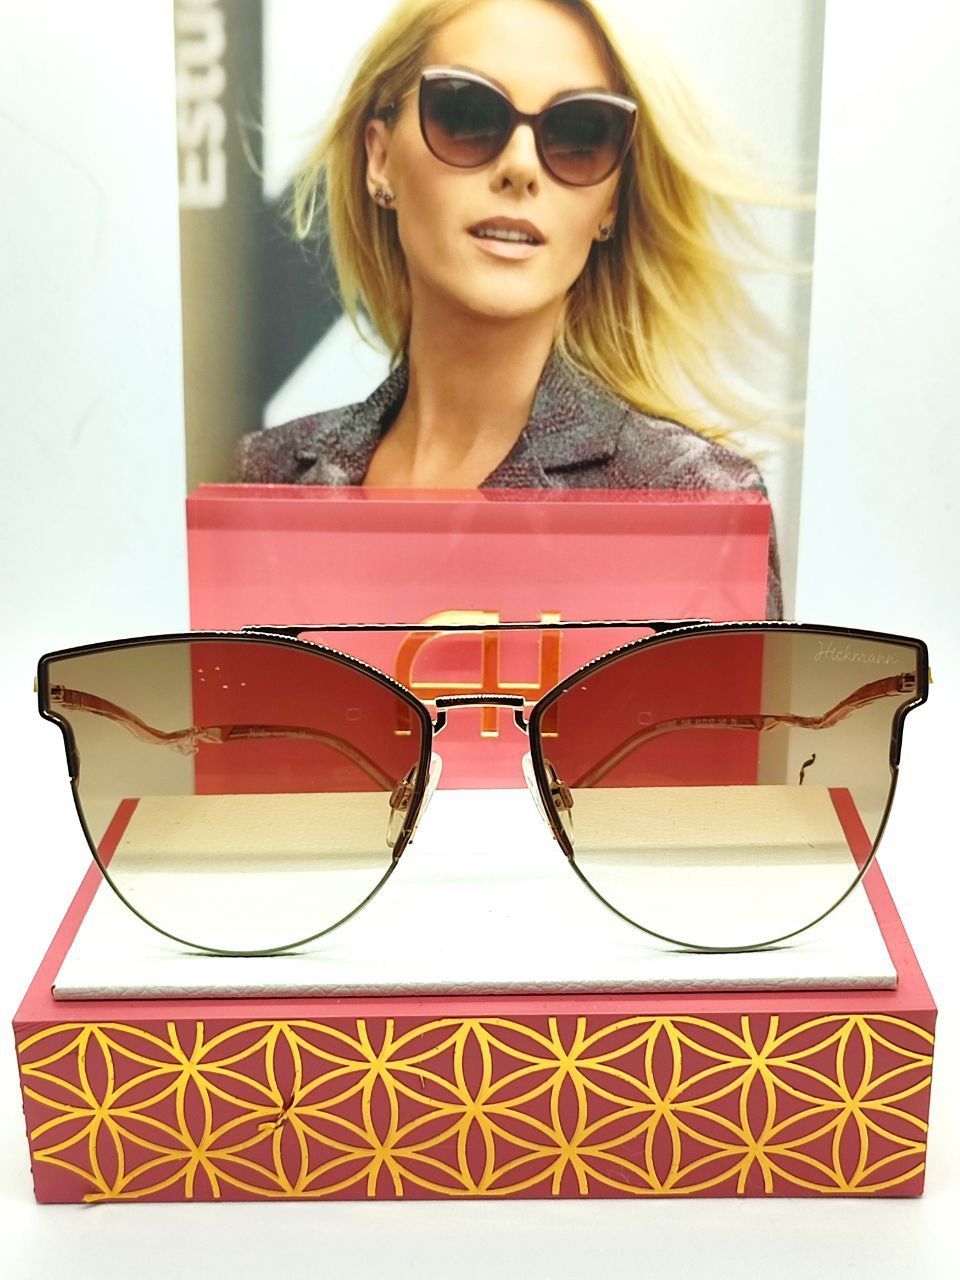 Солнцезащитные очки женские Hickmann 3095E светло-коричневые